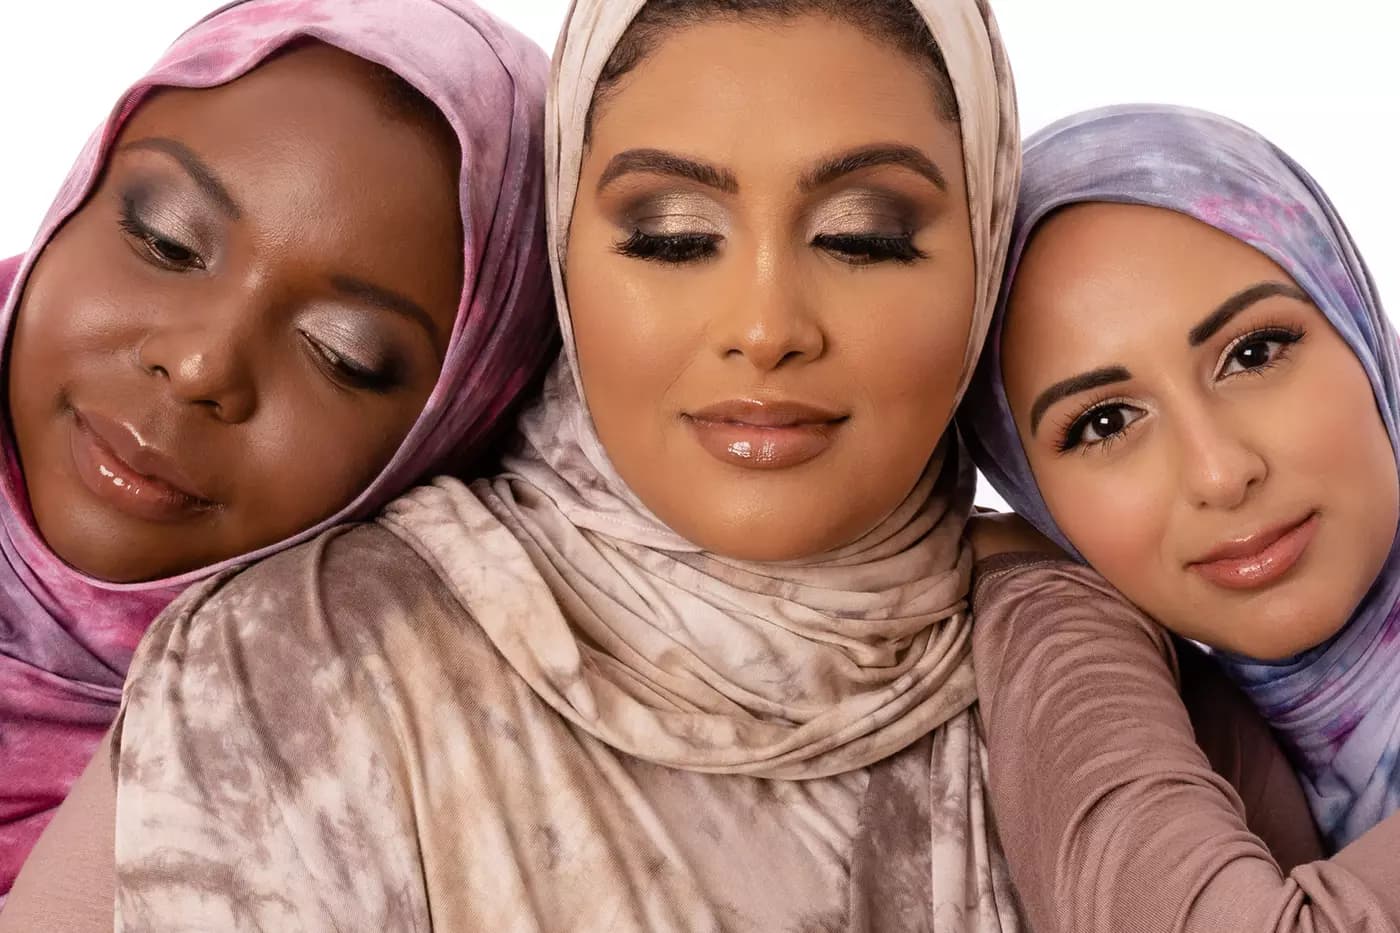 سوشیال مدیا راه را برای بیزینس مربوط به حجاب پیش روی این زن و شوهر مسلمان در تورنتو گذاشت